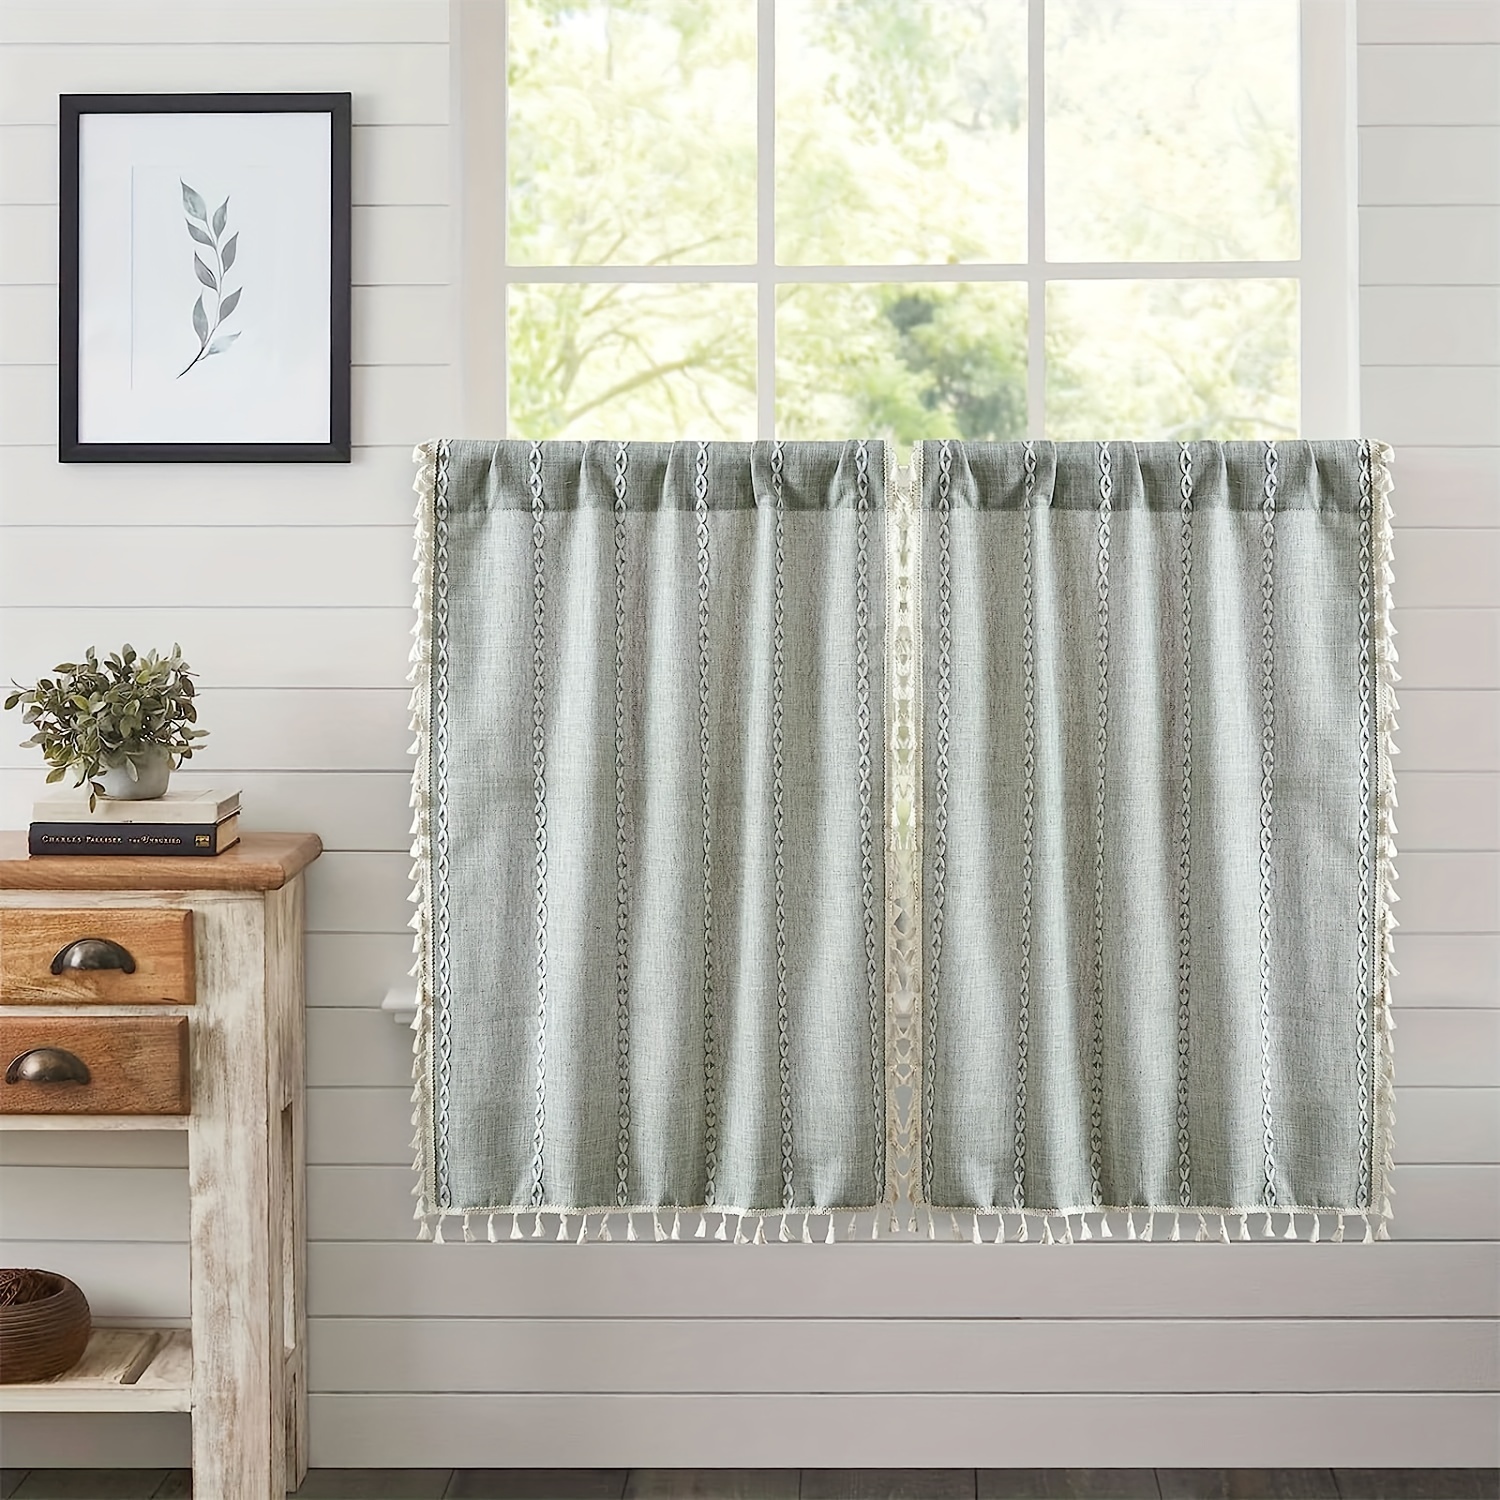 Cortinas cortas de algodón y lino, cortinas para ventanas pequeñas